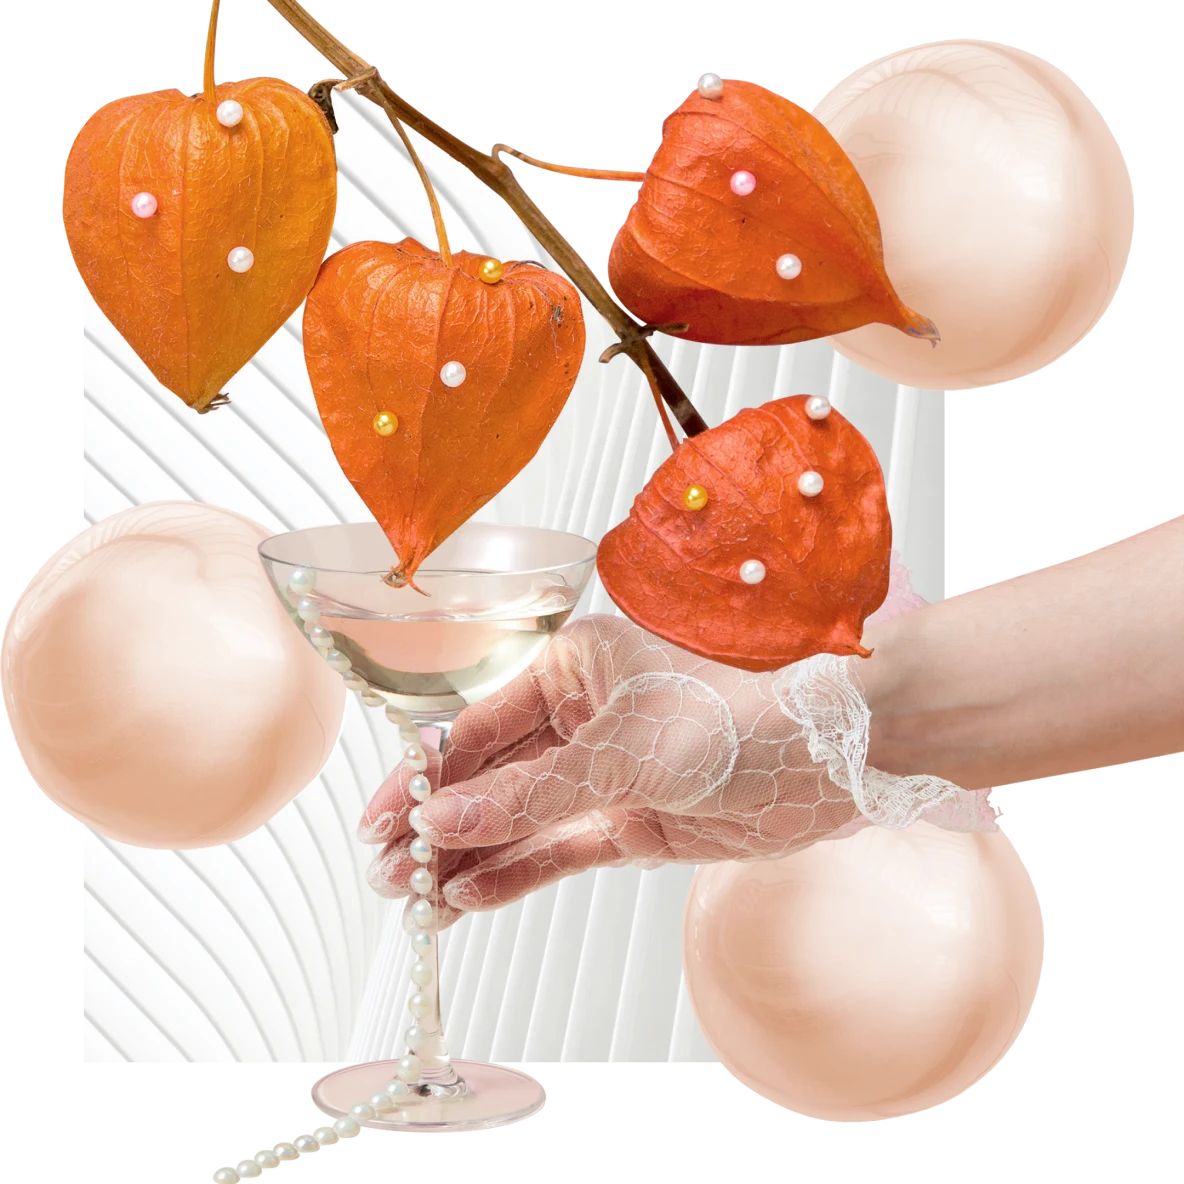 Quatro fisális laranja em um galho fino. Plano de fundo com três pérolas laranja translúcidas, mão com luva de renda segurando uma taça de martini e colar de pérolas e padrão de leque branco.
